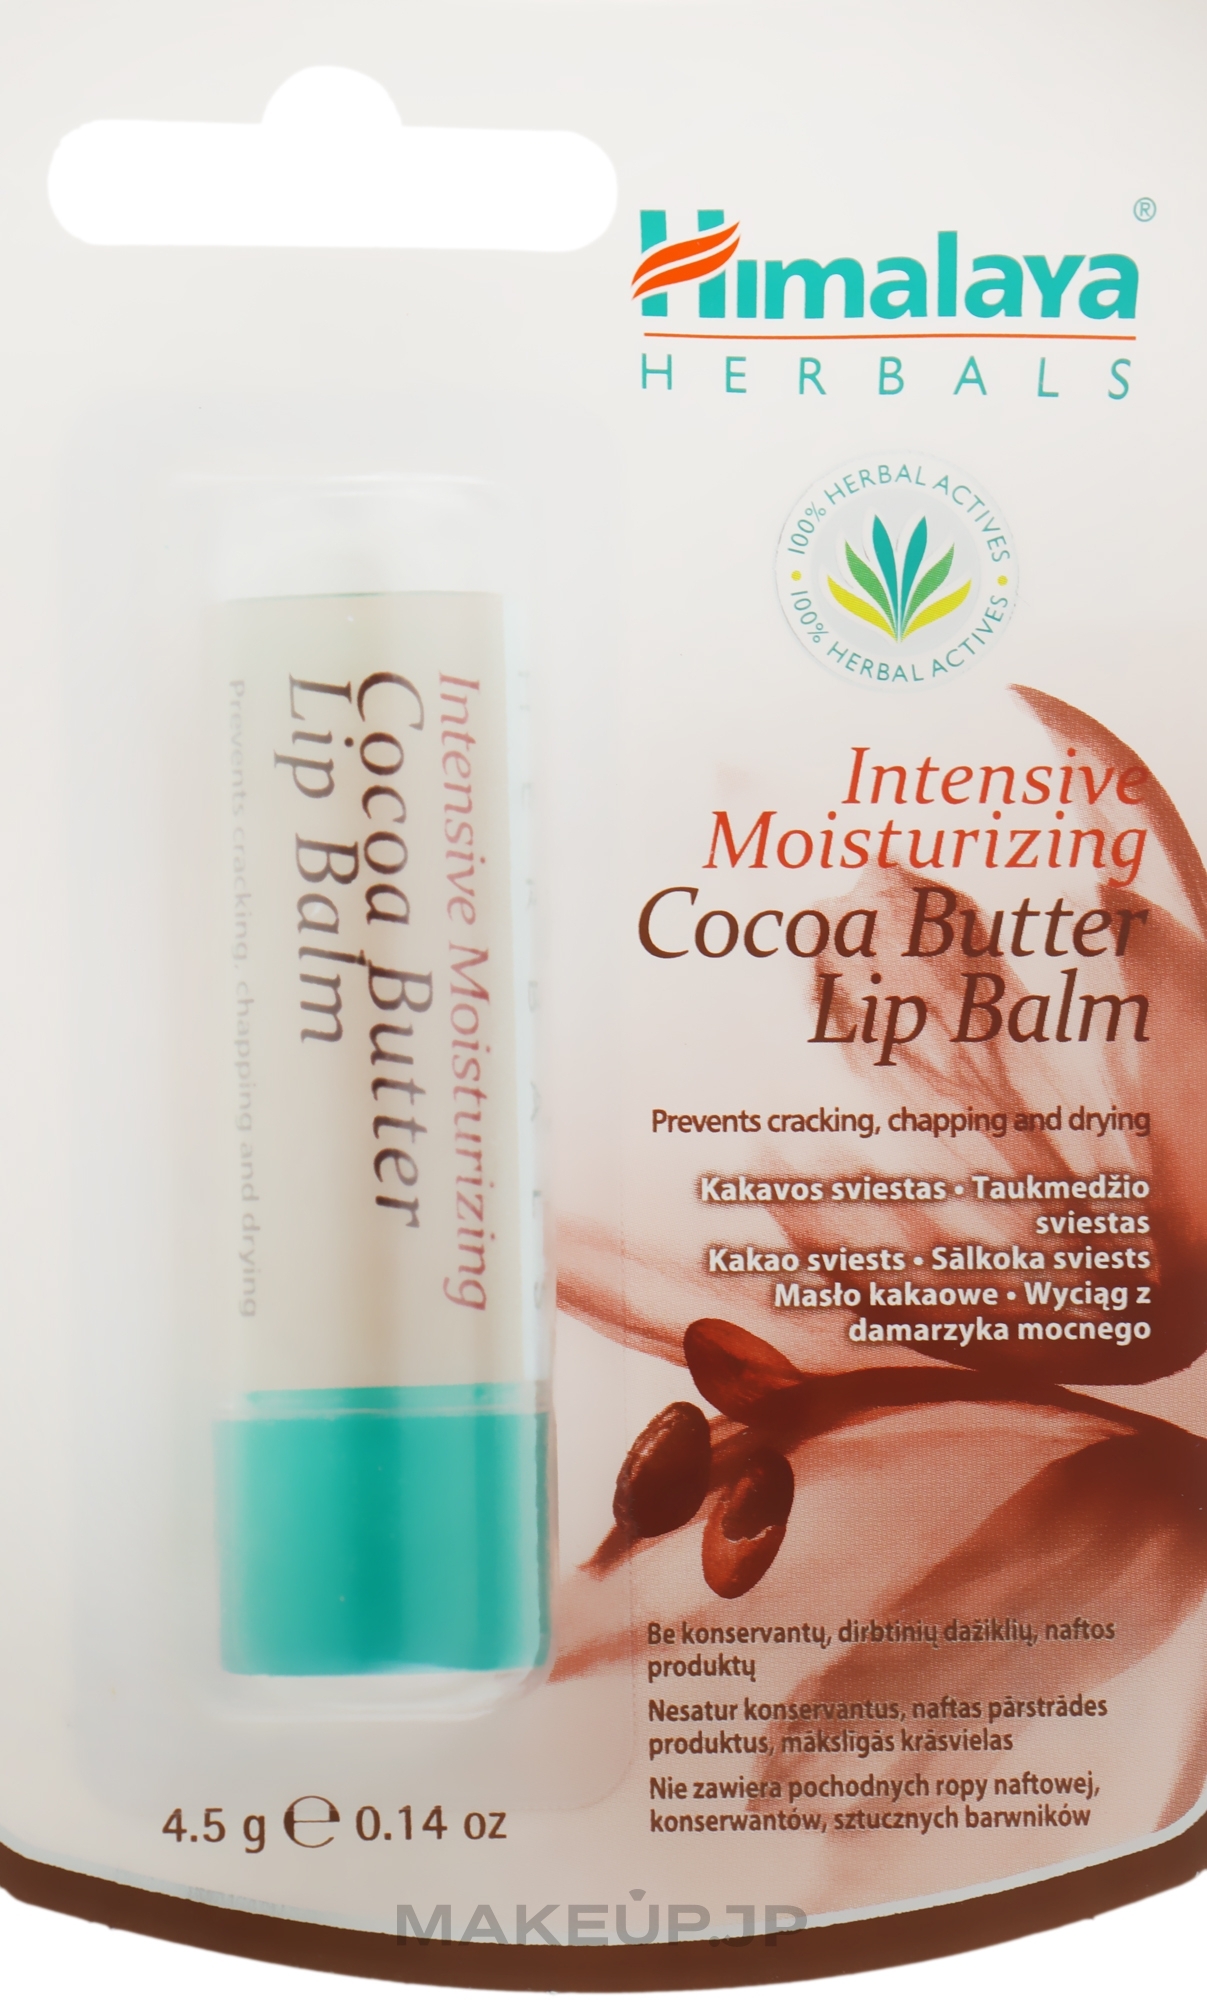 Moisturizing Cocoa Butter Lip Balm - Himalaya Herbals Intensive Moisturizing Cocoa Butter Lip Balm — photo 4.5 g